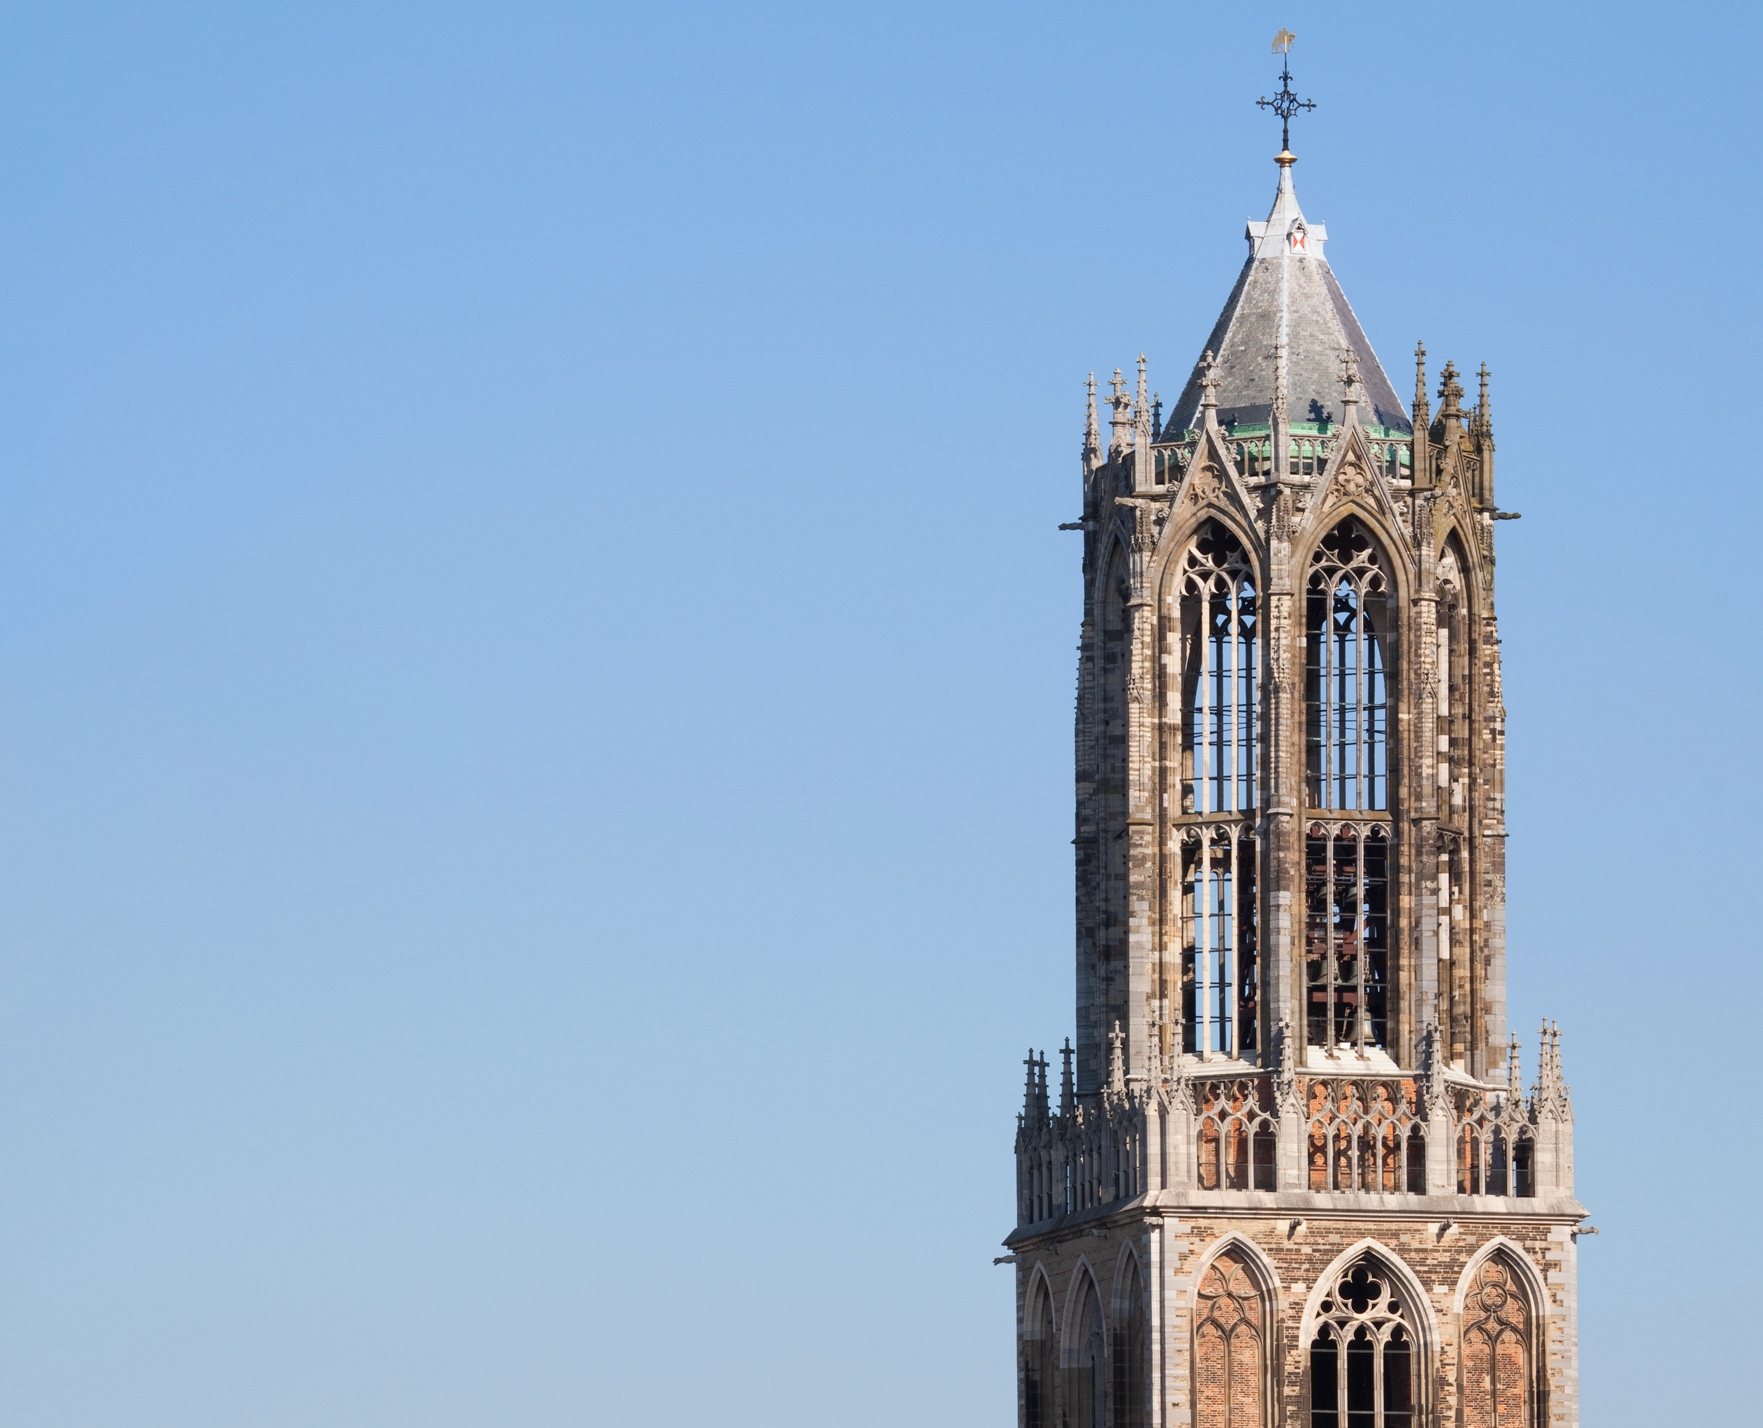 De piek van de Domtoren in Utrecht. Beeld door Massimo Catarinella via Wikimedia.